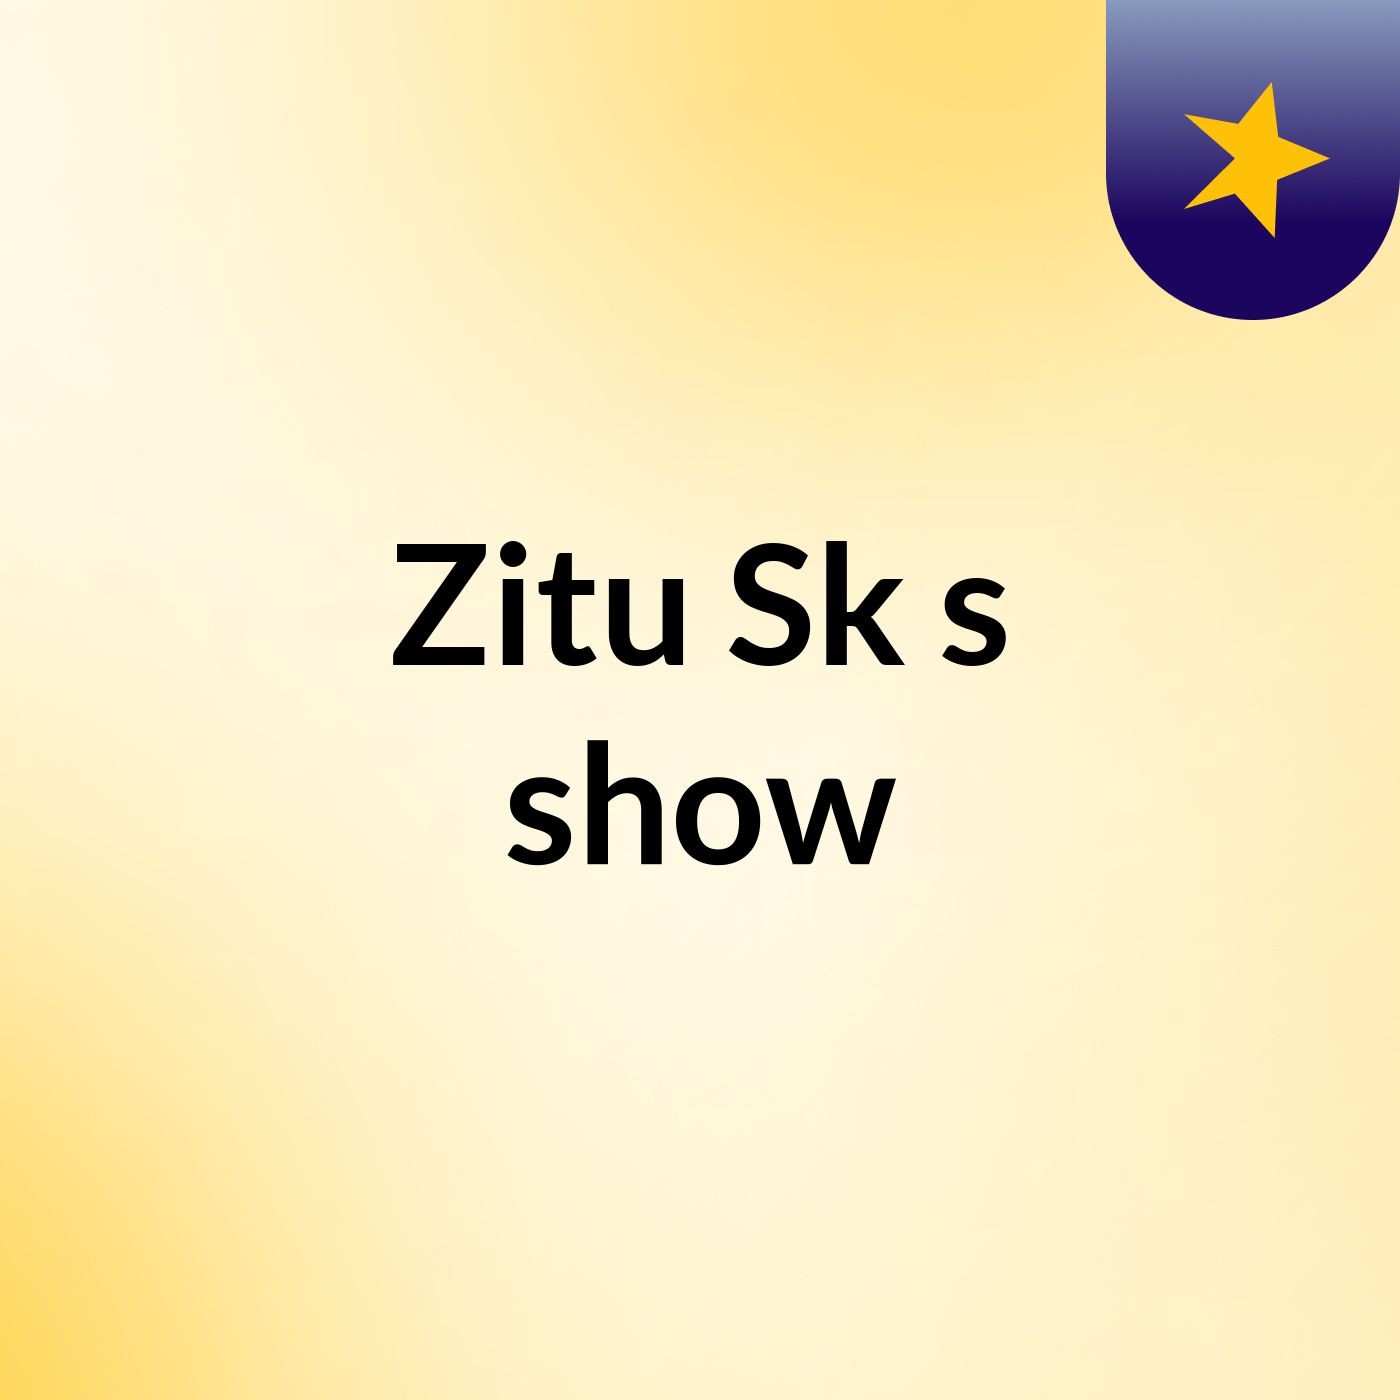 Zitu Sk's show